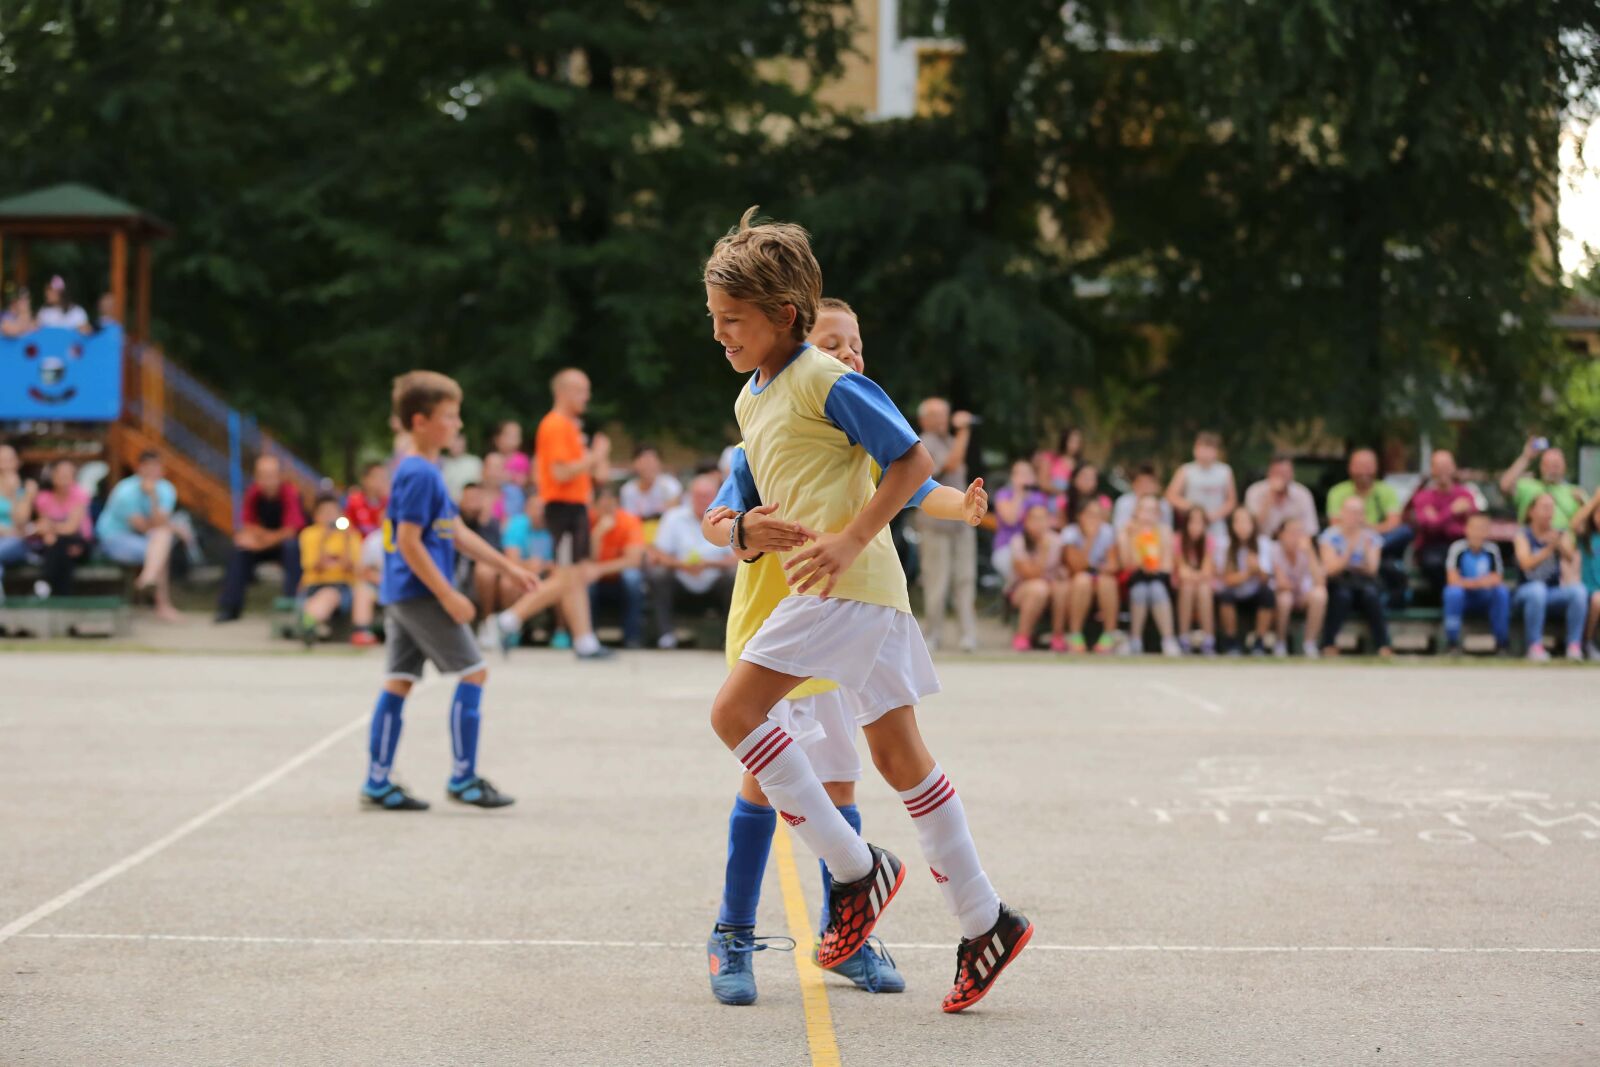 Canon EOS 5D Mark III sample photo. Soccer, hug, football player photography